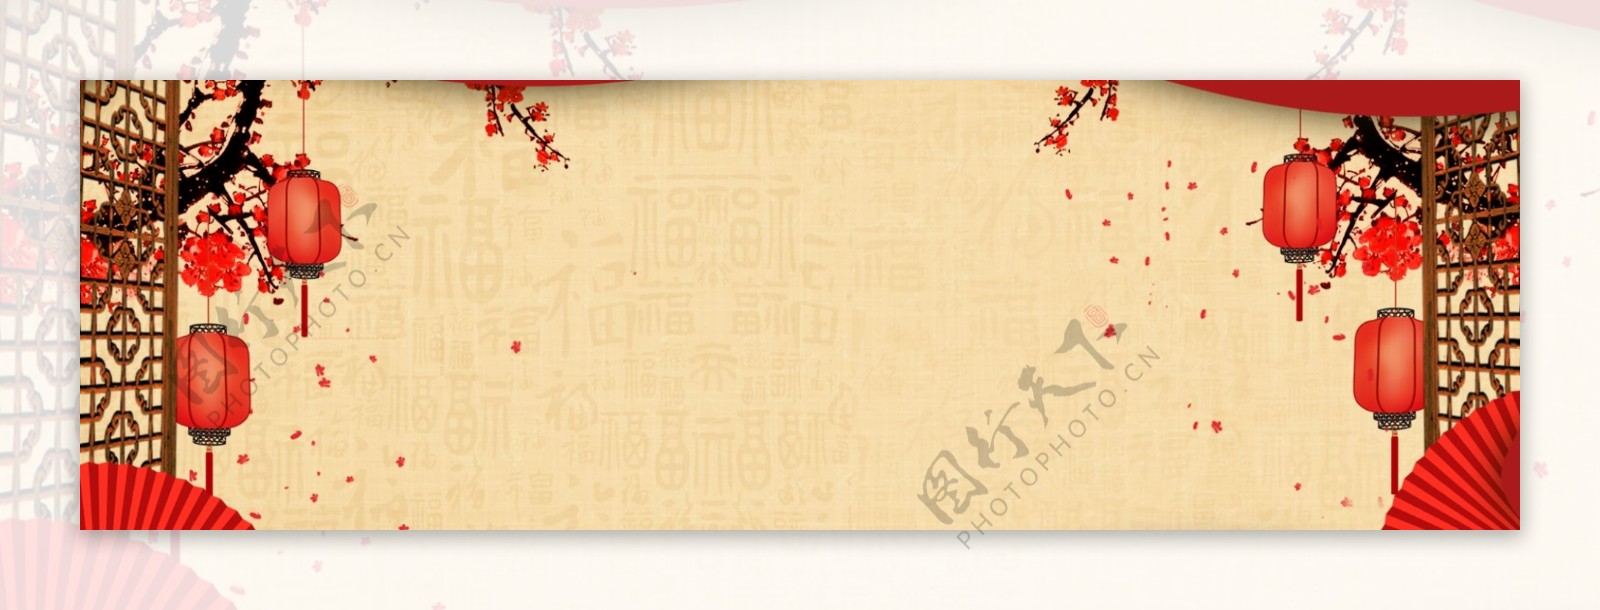 新春元旦传统节日banner